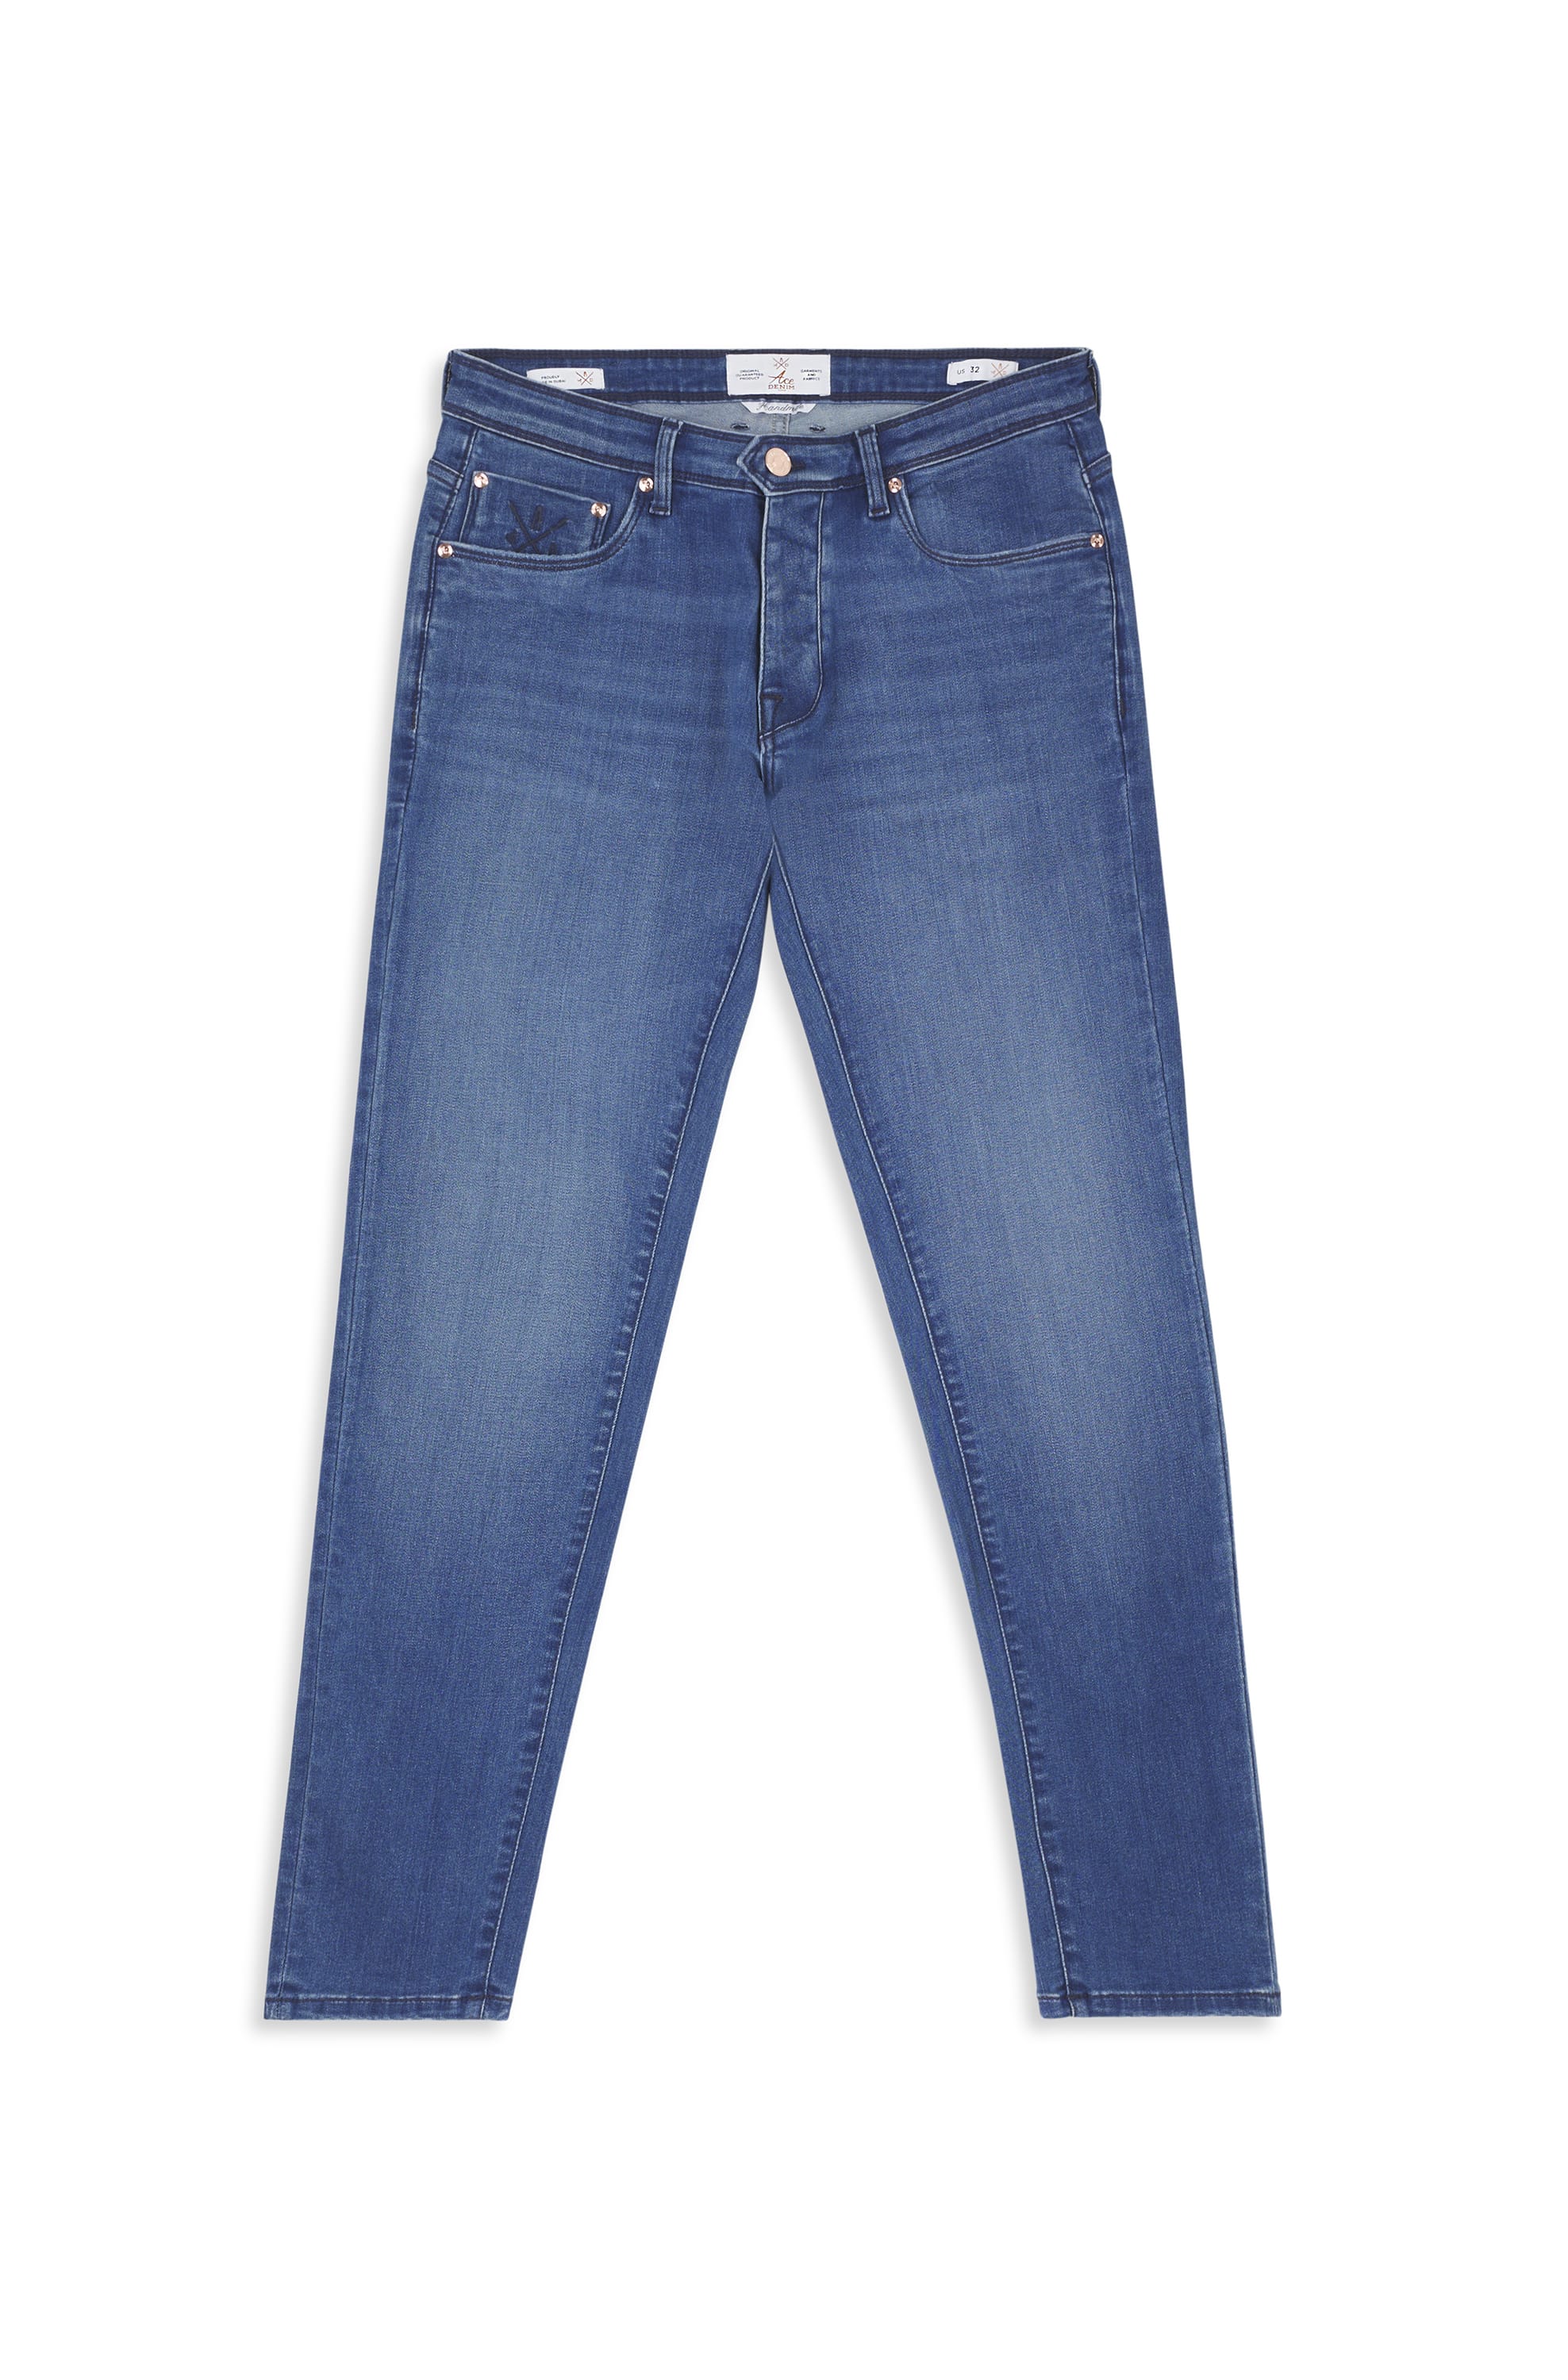 ACE DENIM - Jeans for Men | Online store | Ace Denim Paris – ACE